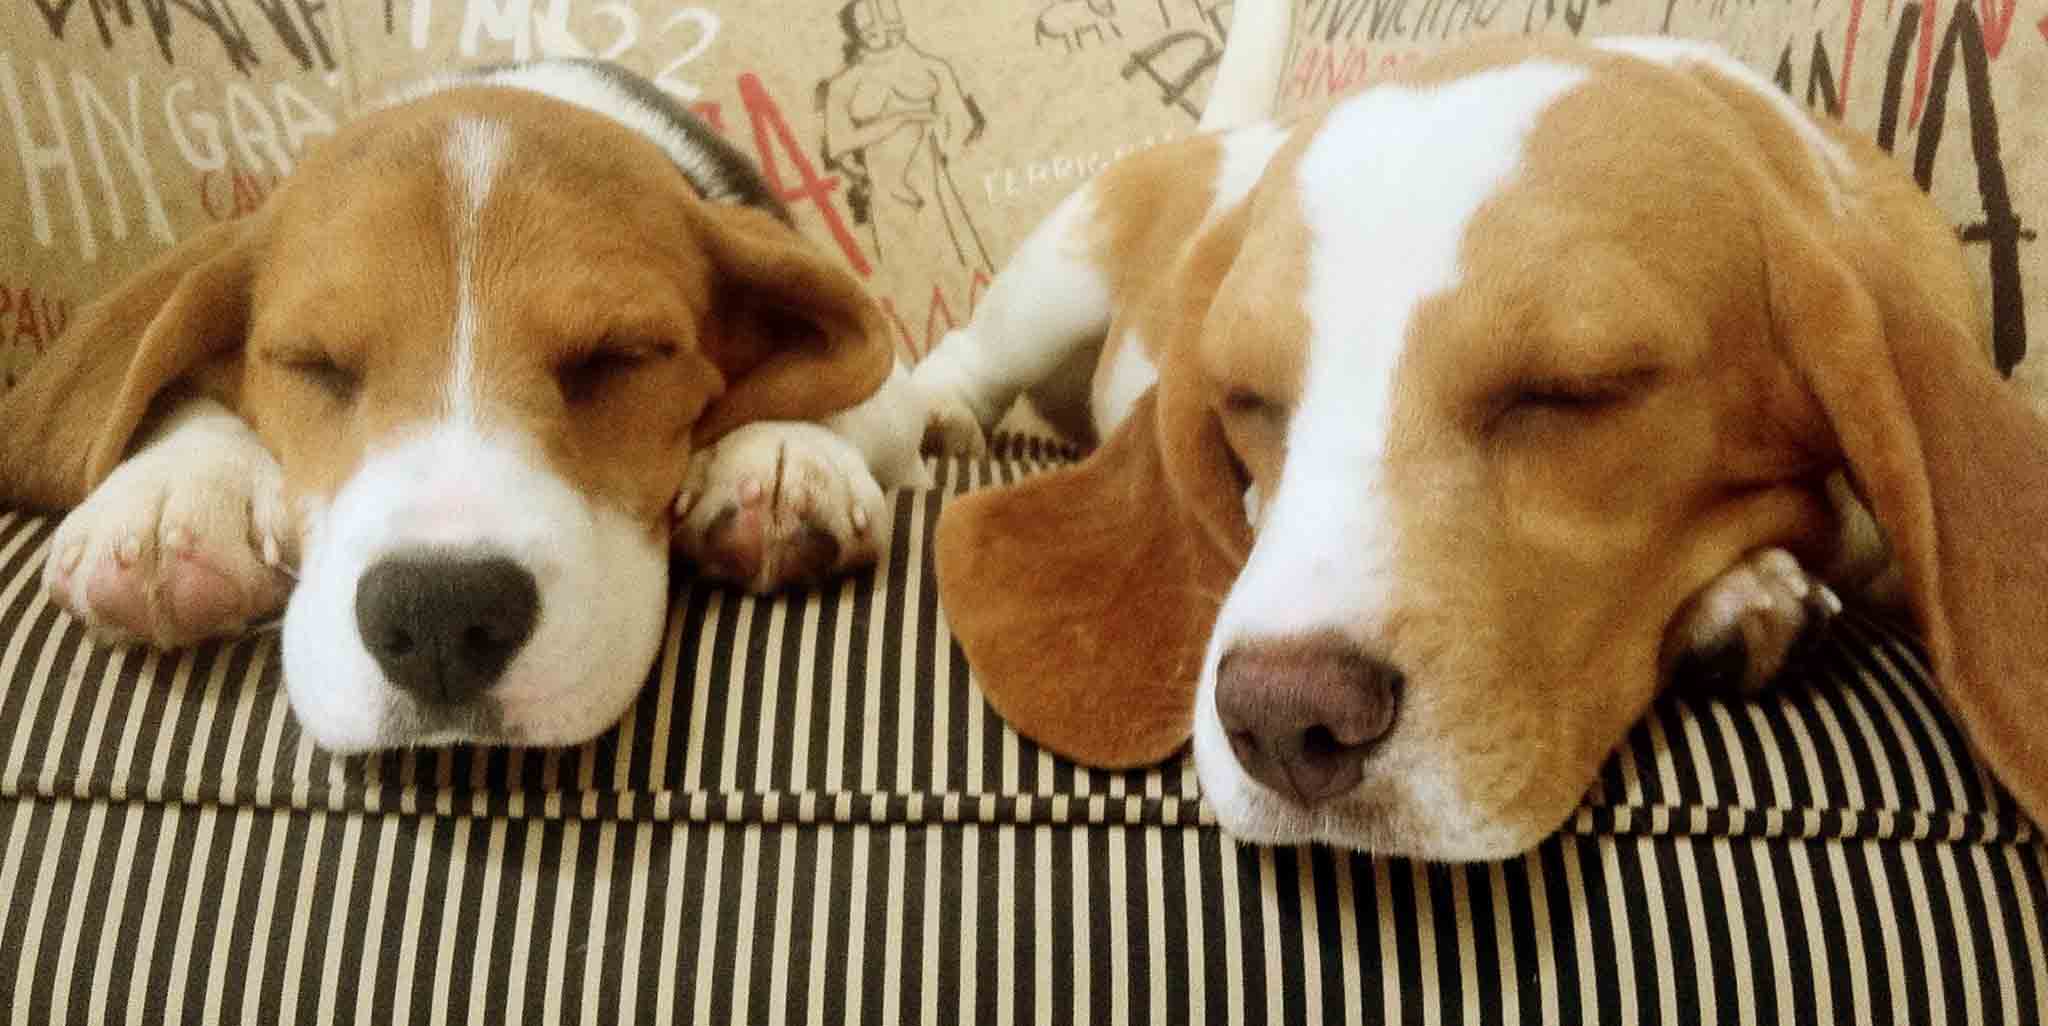 Por que resgataram os beagles?